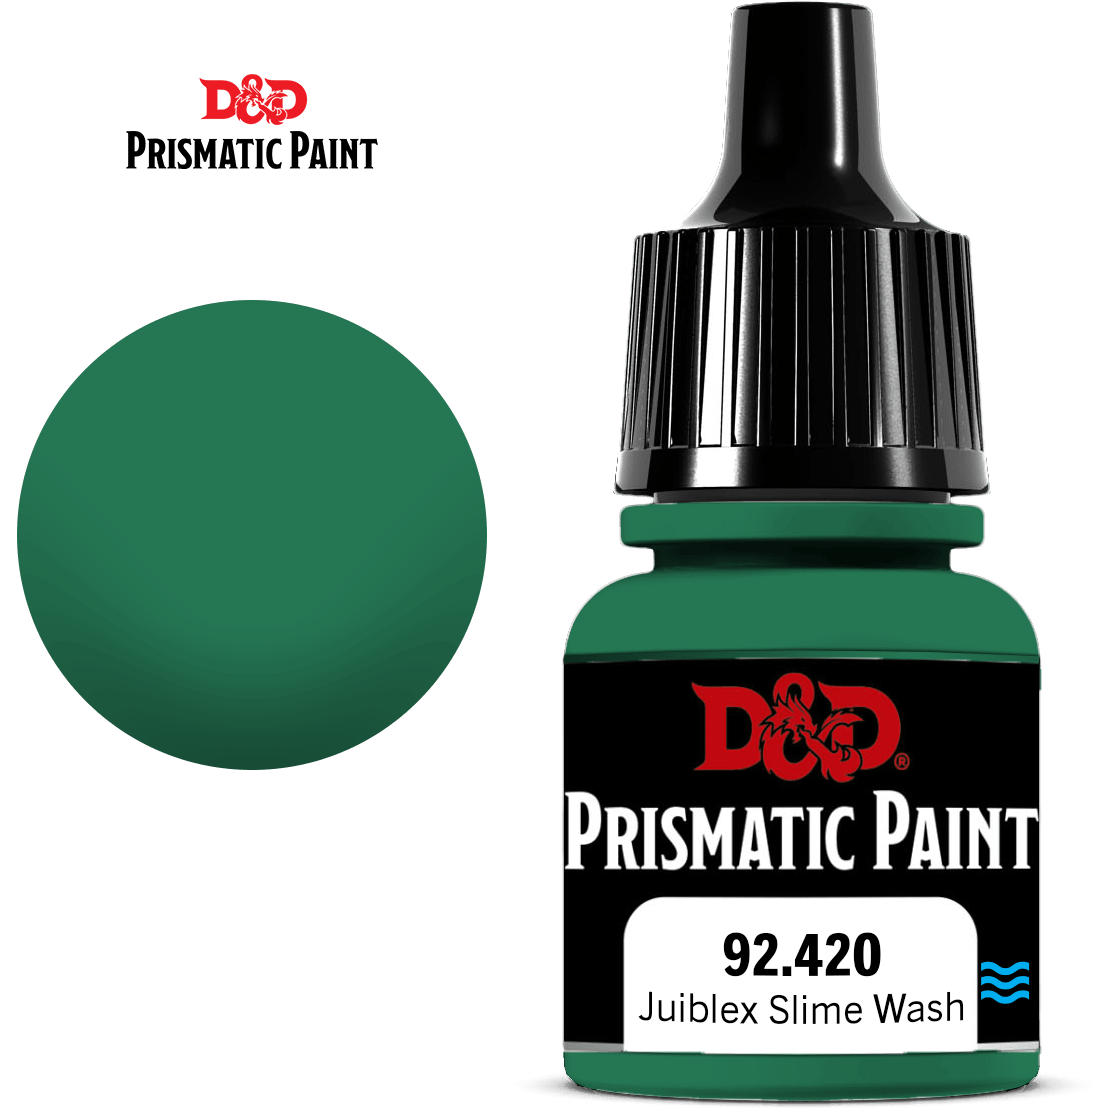 D&D Prismatic Paint - Juiblex Slime Wash